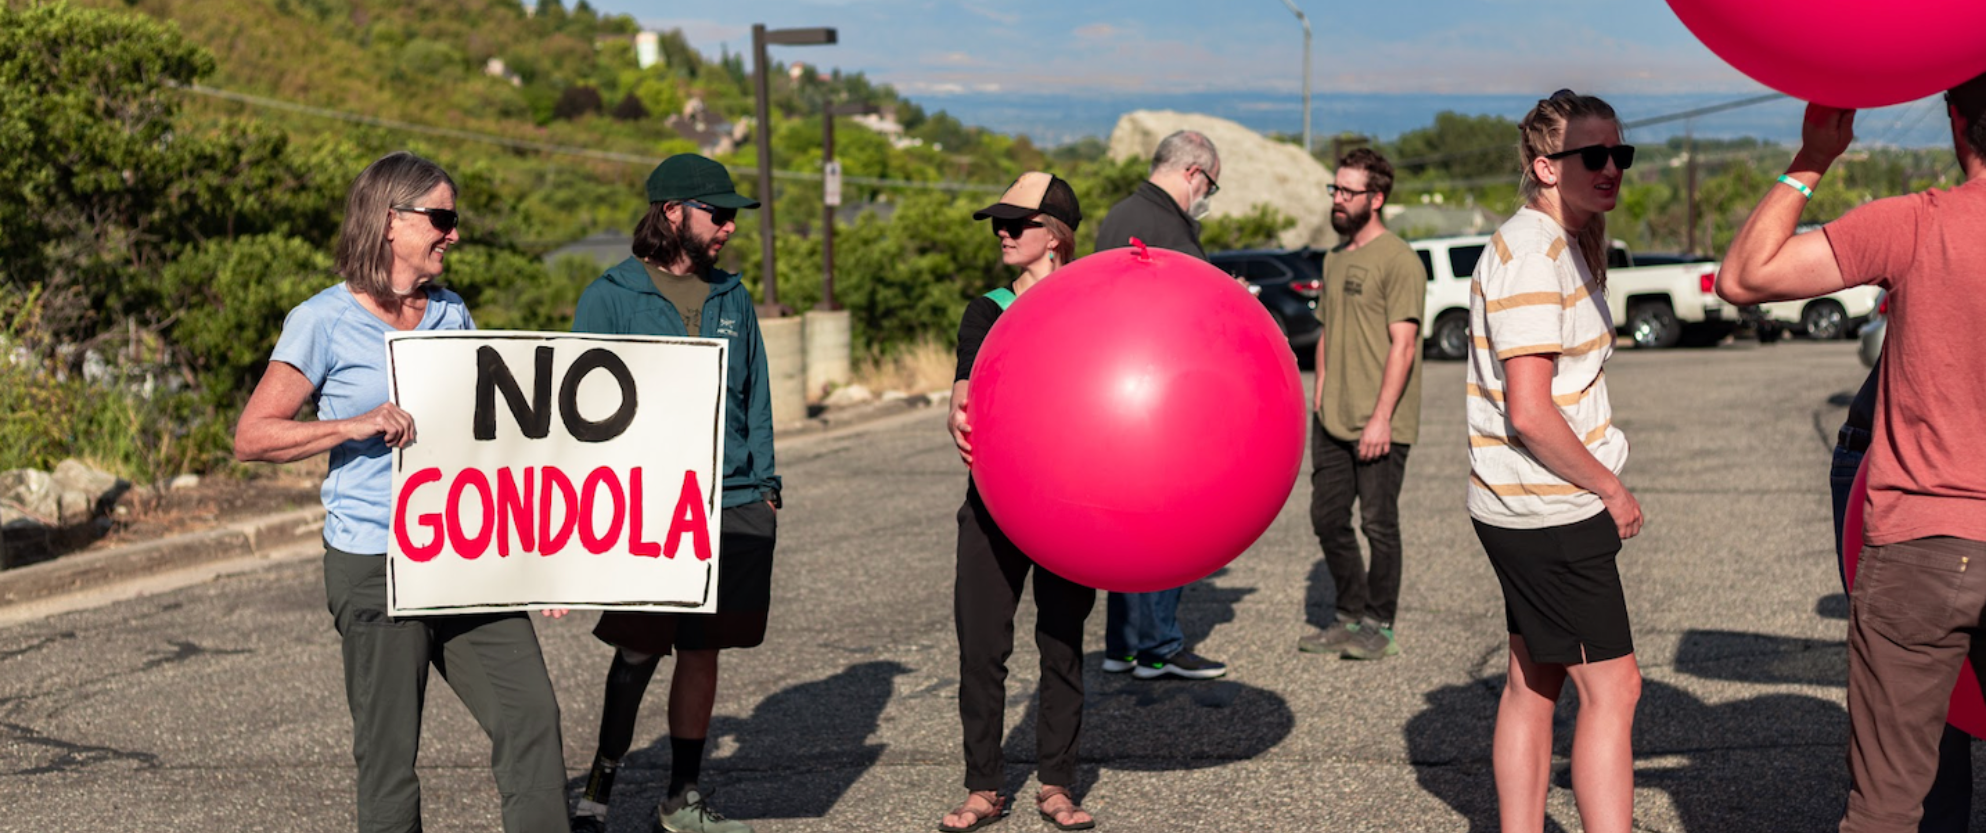 No gondola photo by SAMUEL WERSTAK at SOC demonstration